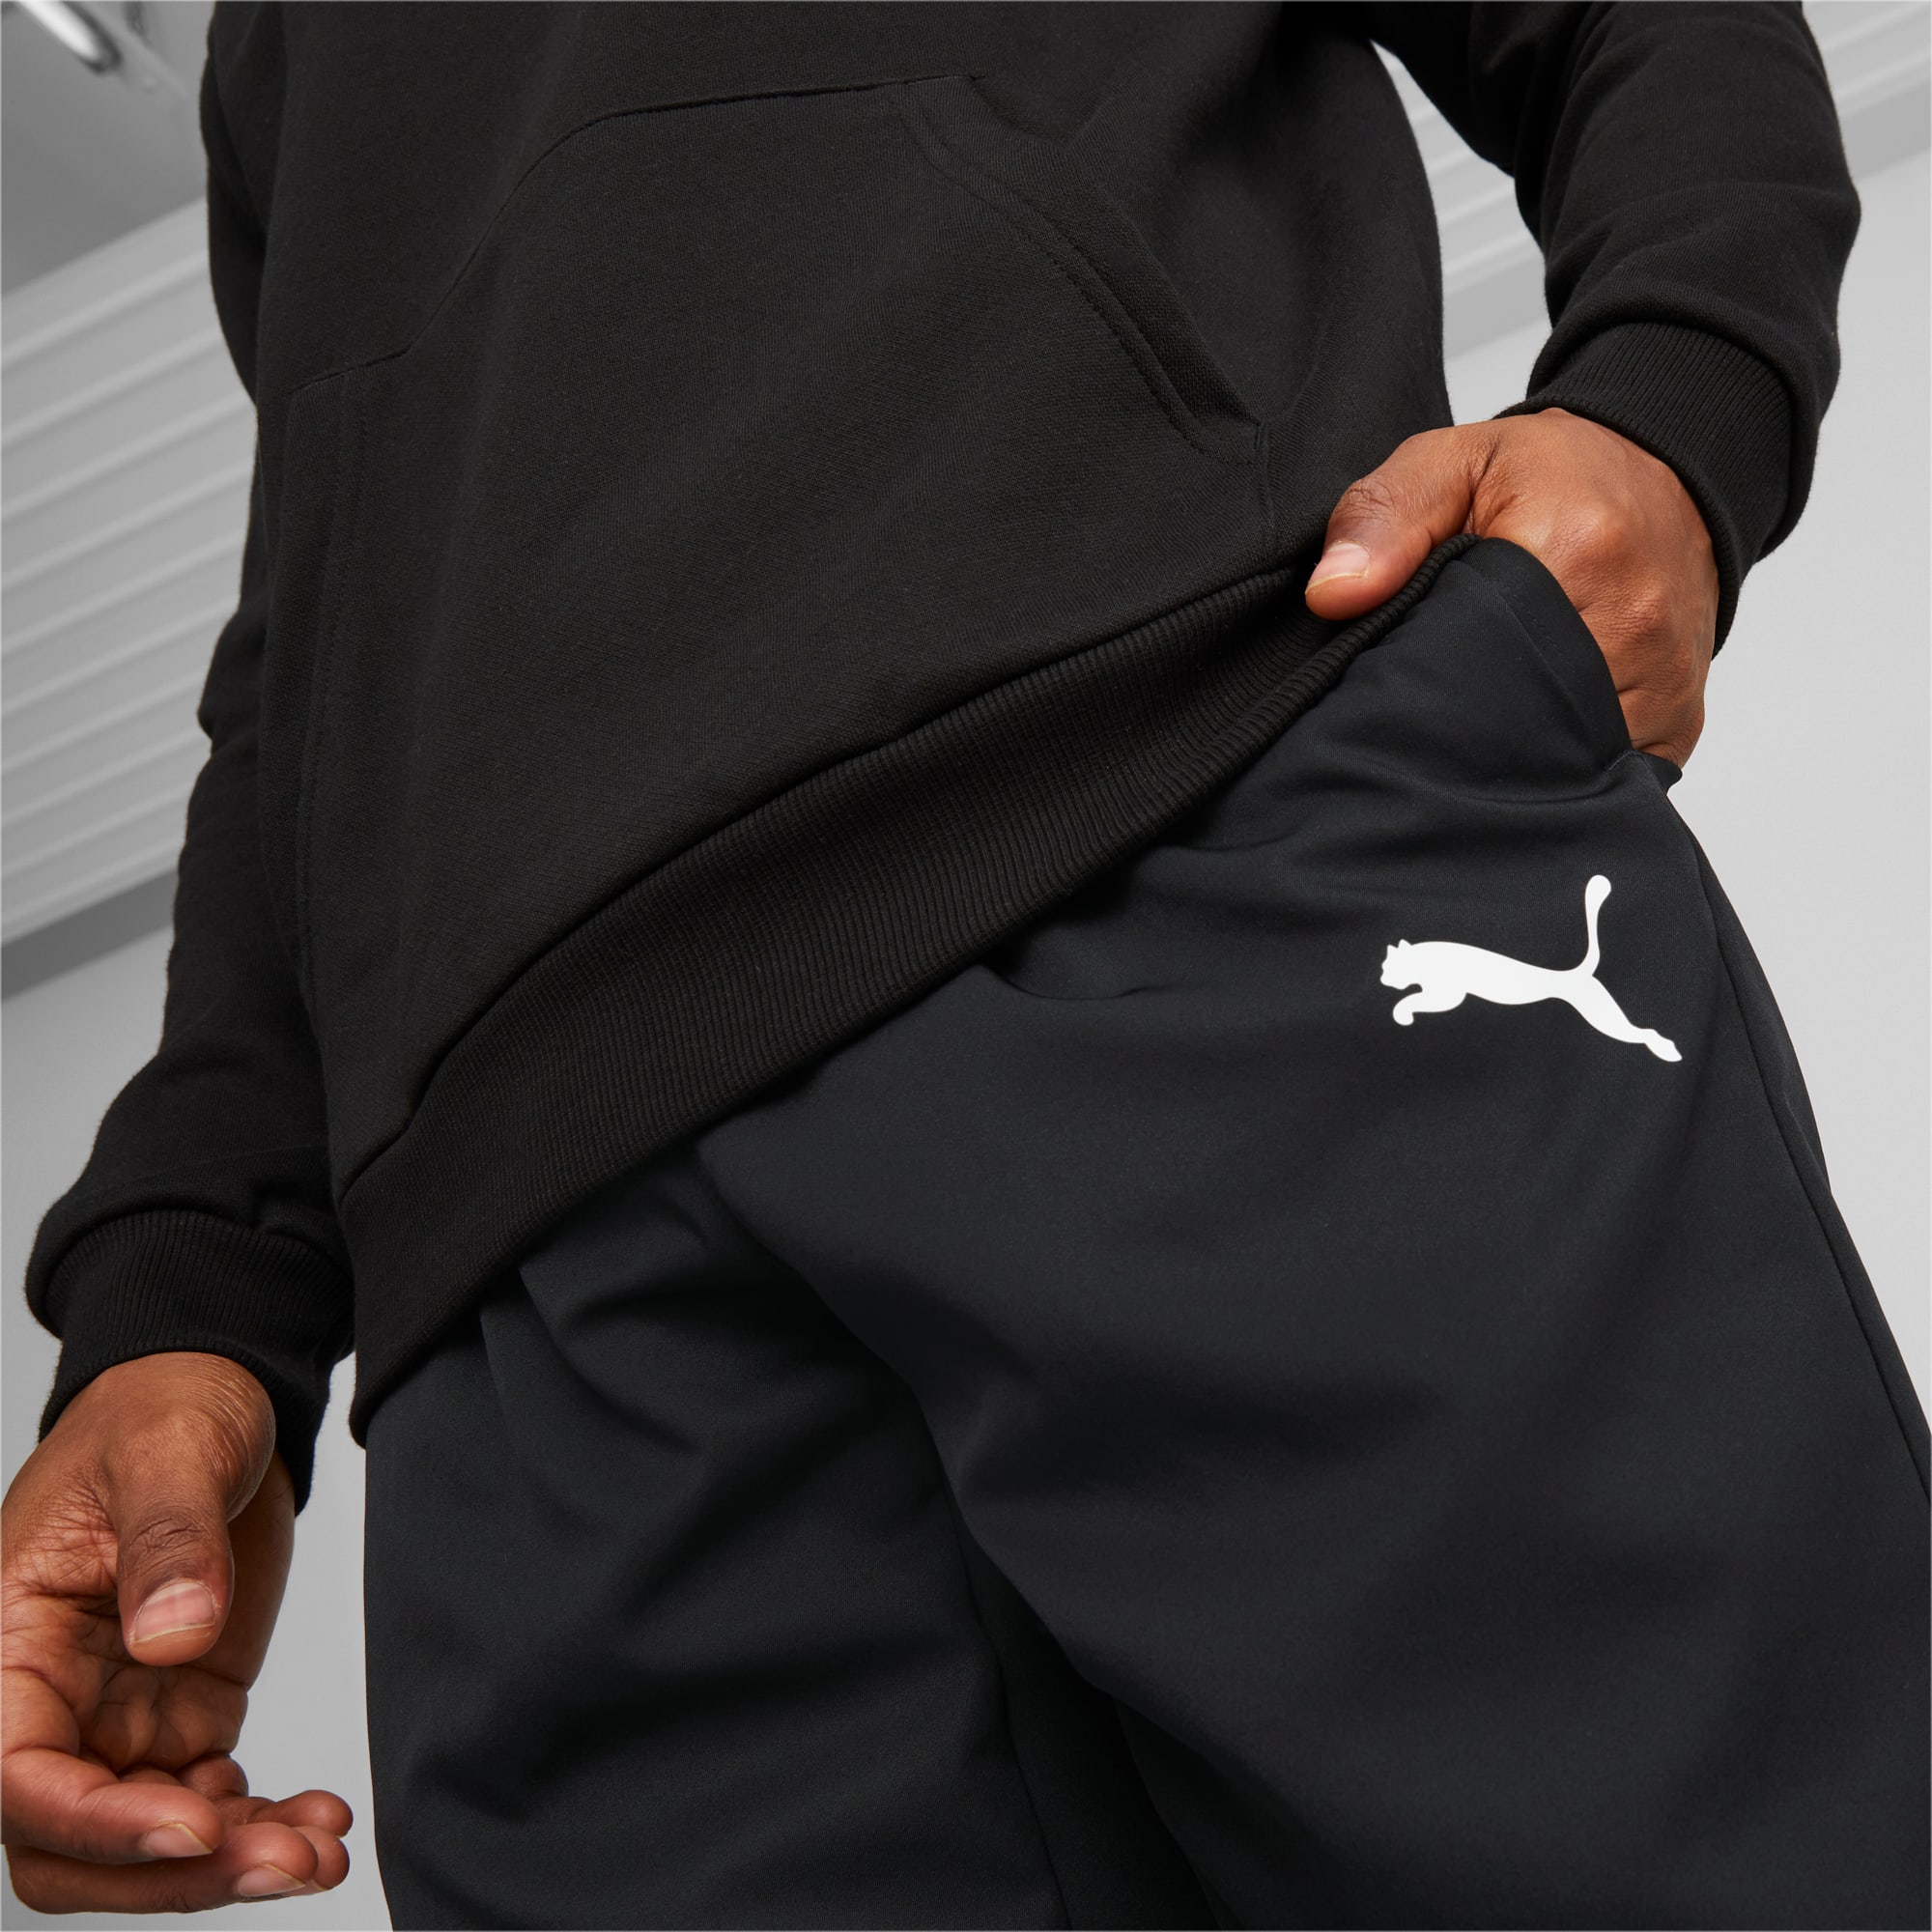 PUMA Active Woven Men's Sweatpants, Black, Size S, Clothing